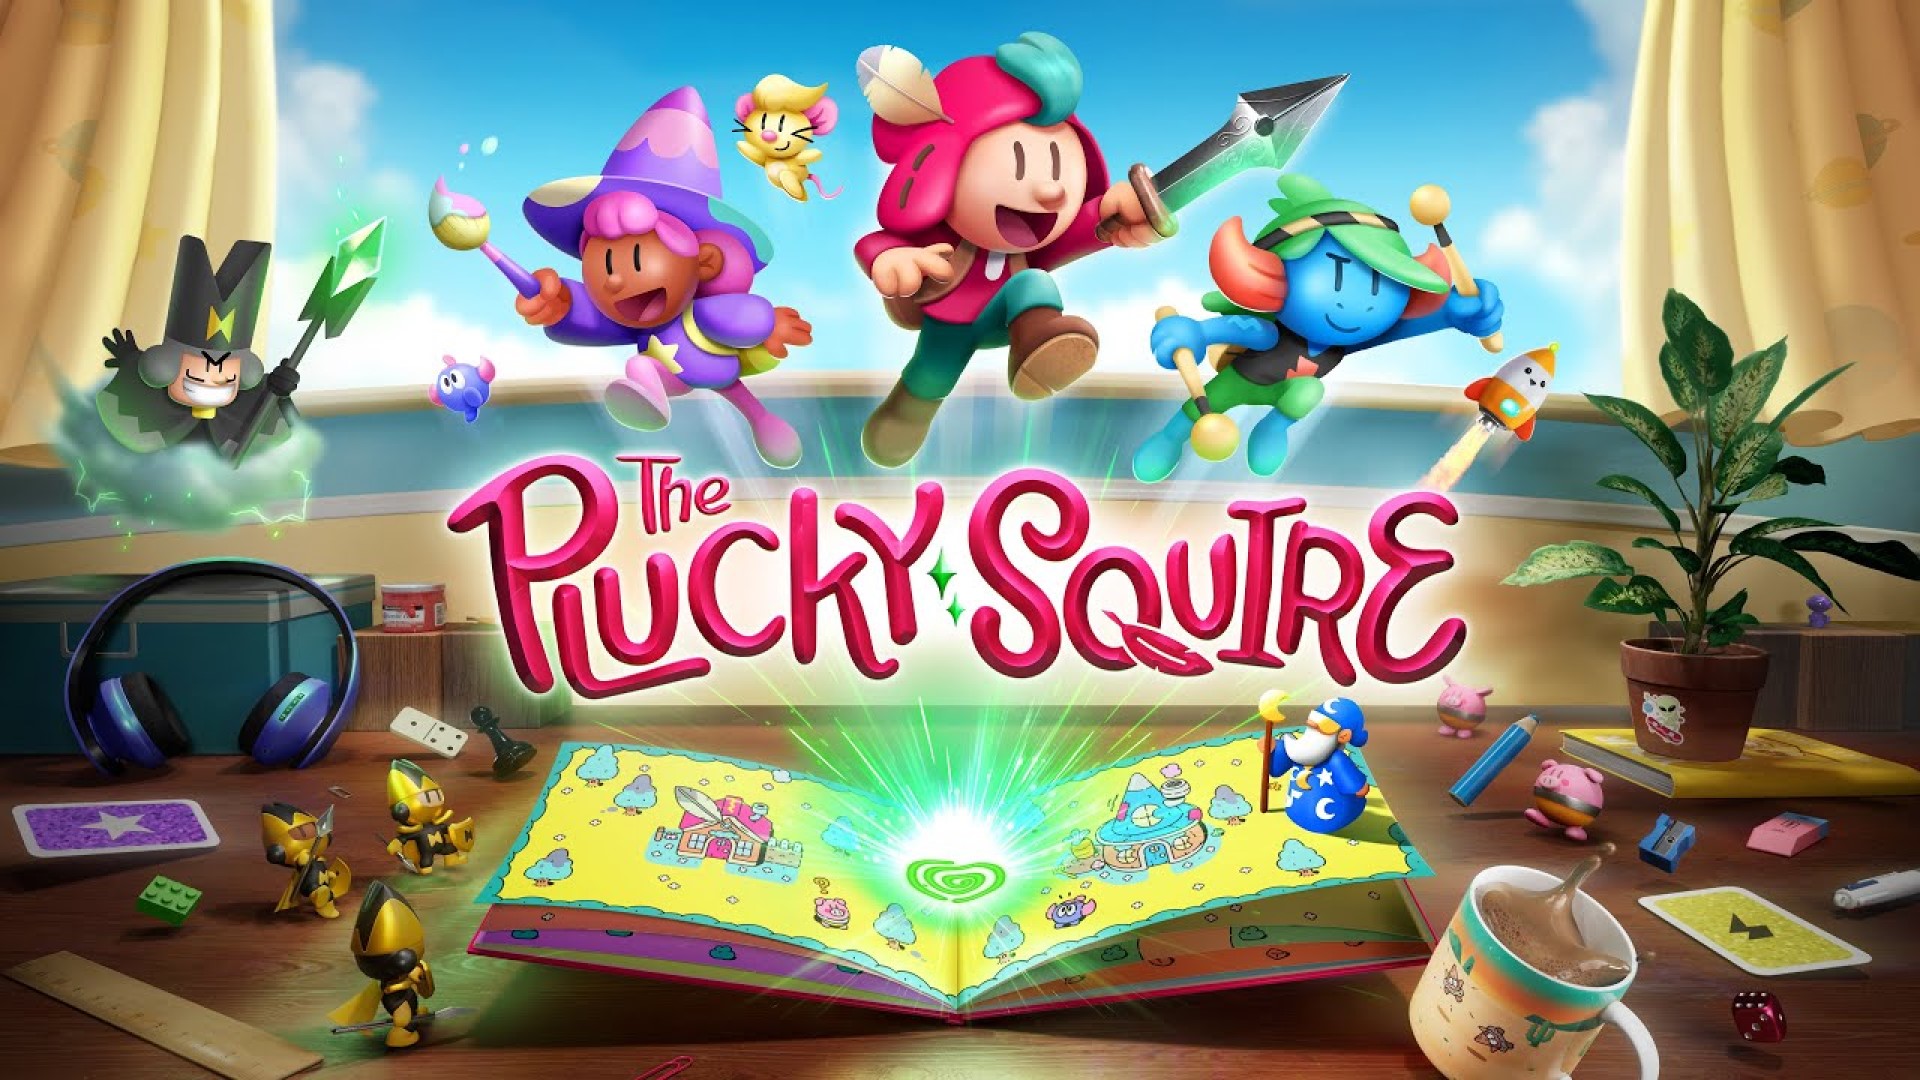 Los desarrolladores de Plucky Squire han publicado nuevos tráilers con gameplay